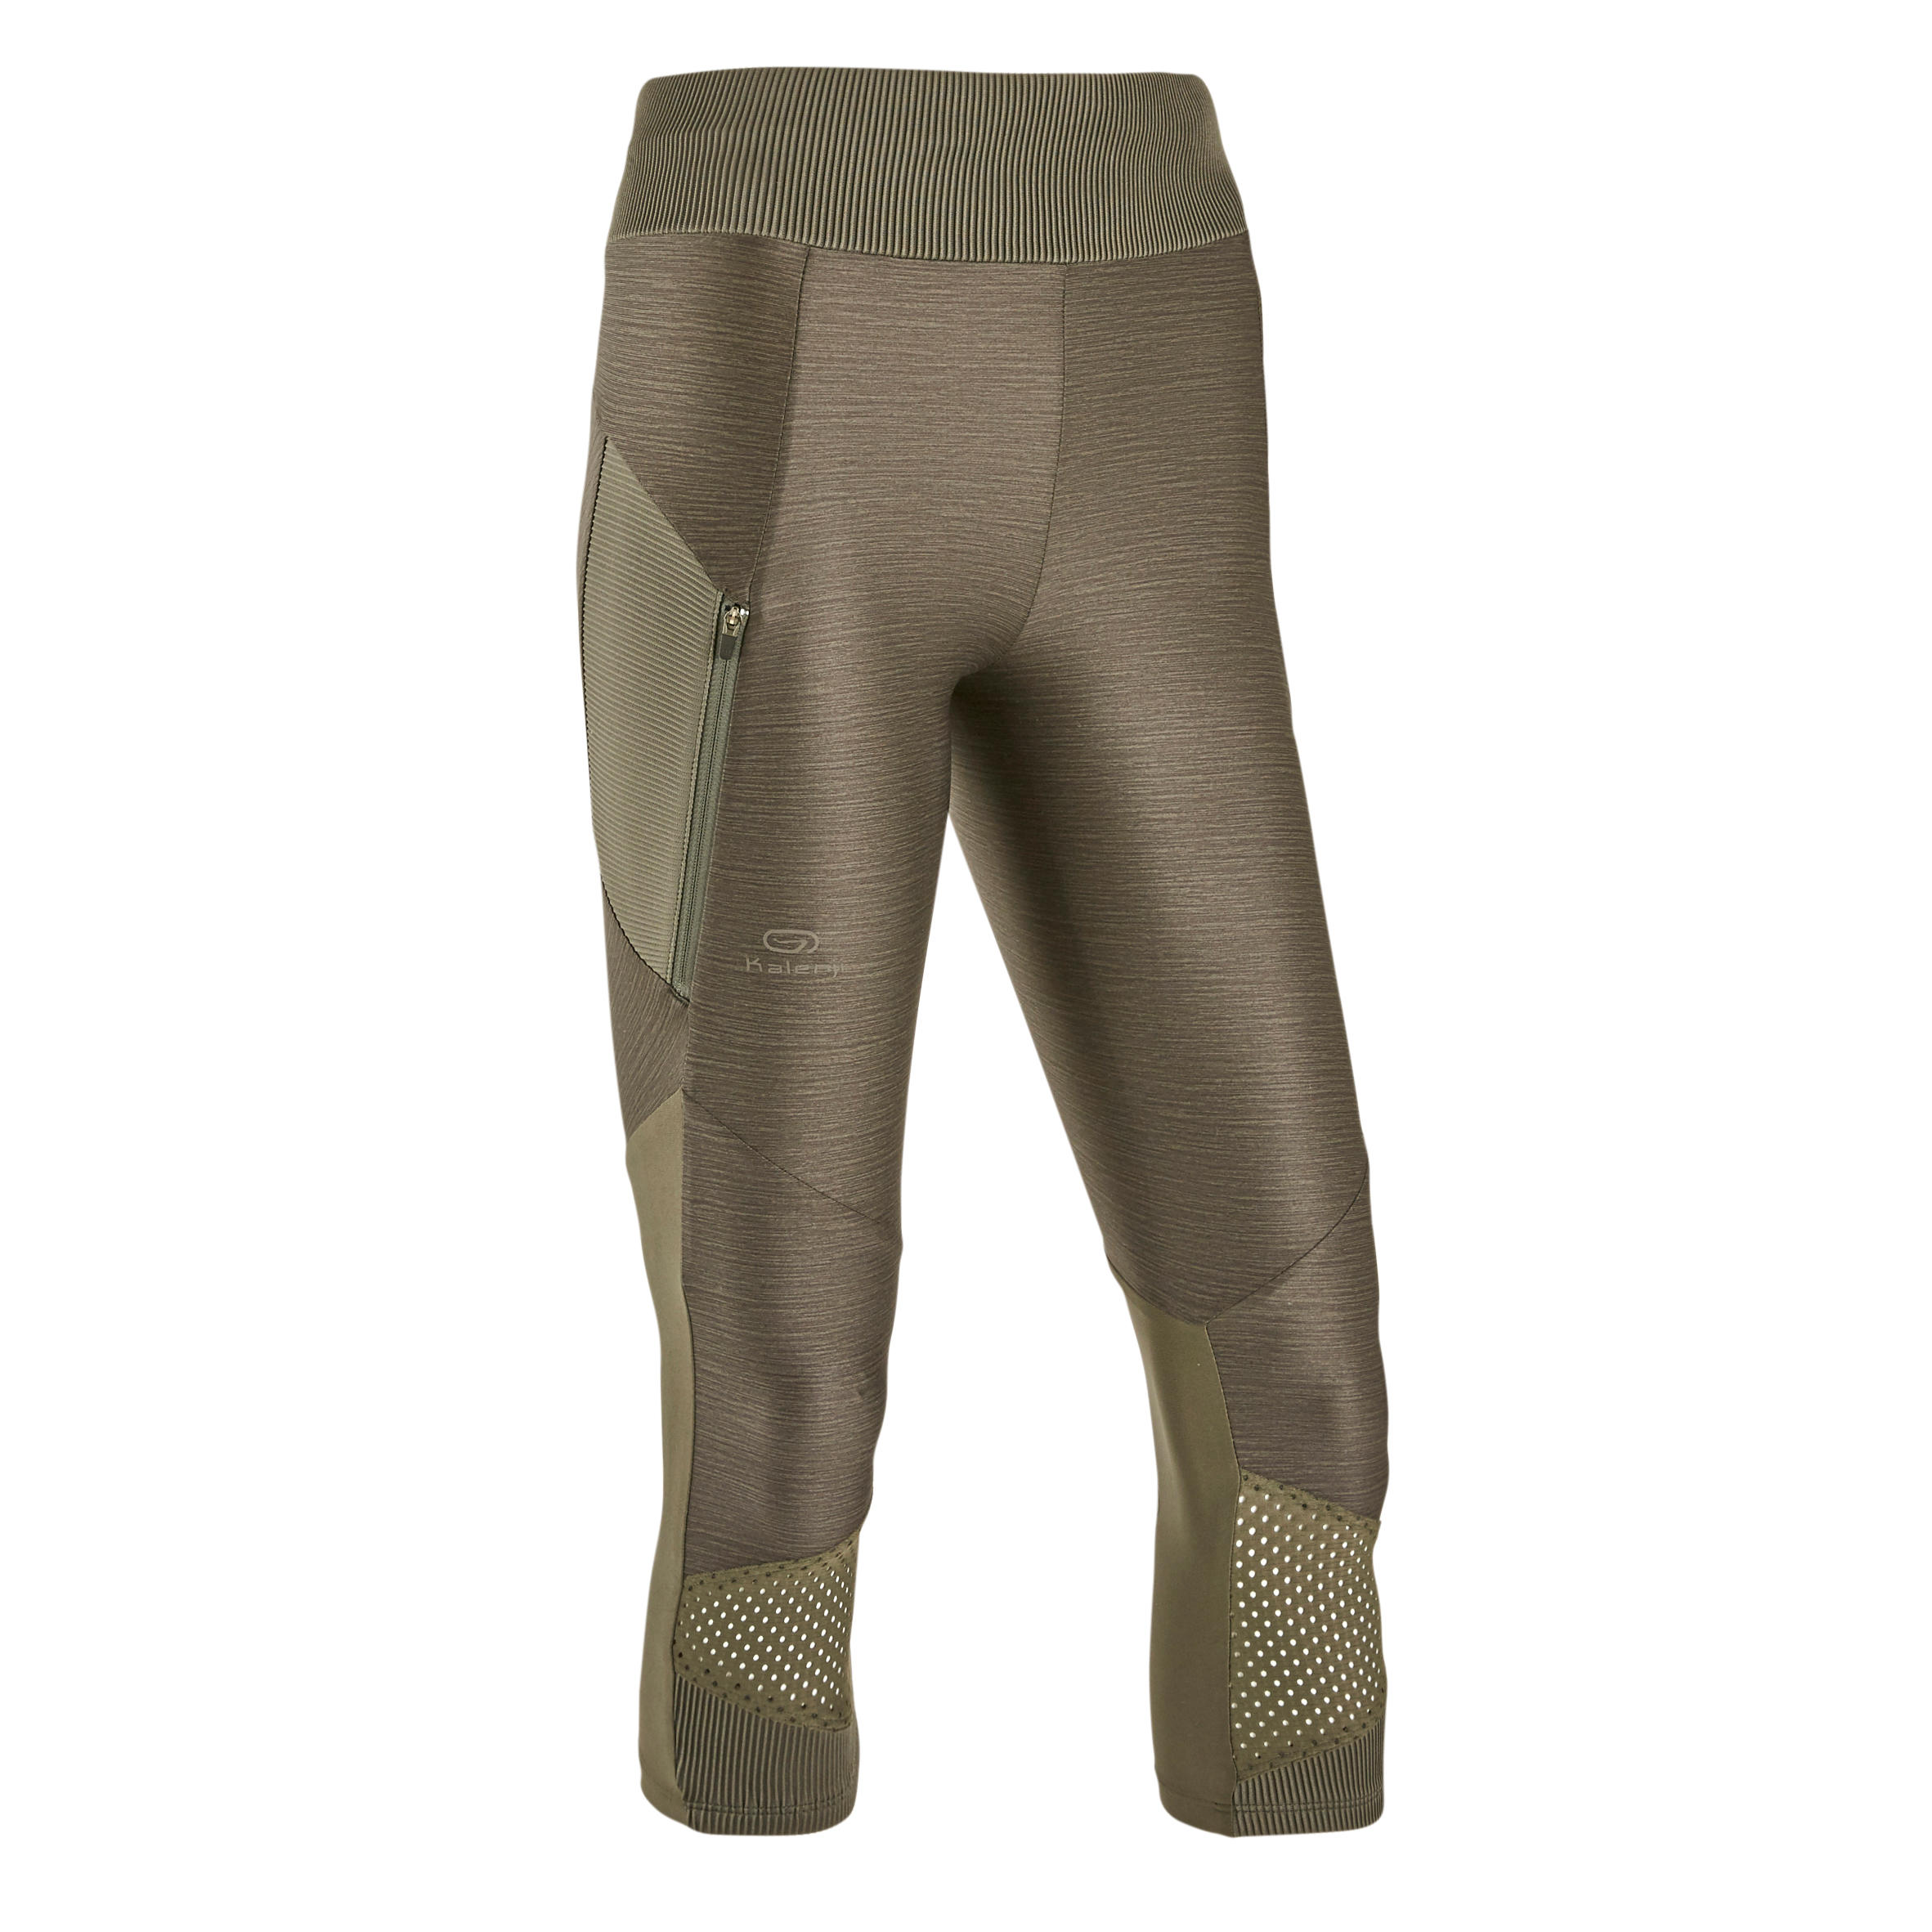 Women's breathable short running leggings Dry+ Feel - khaki 39/39